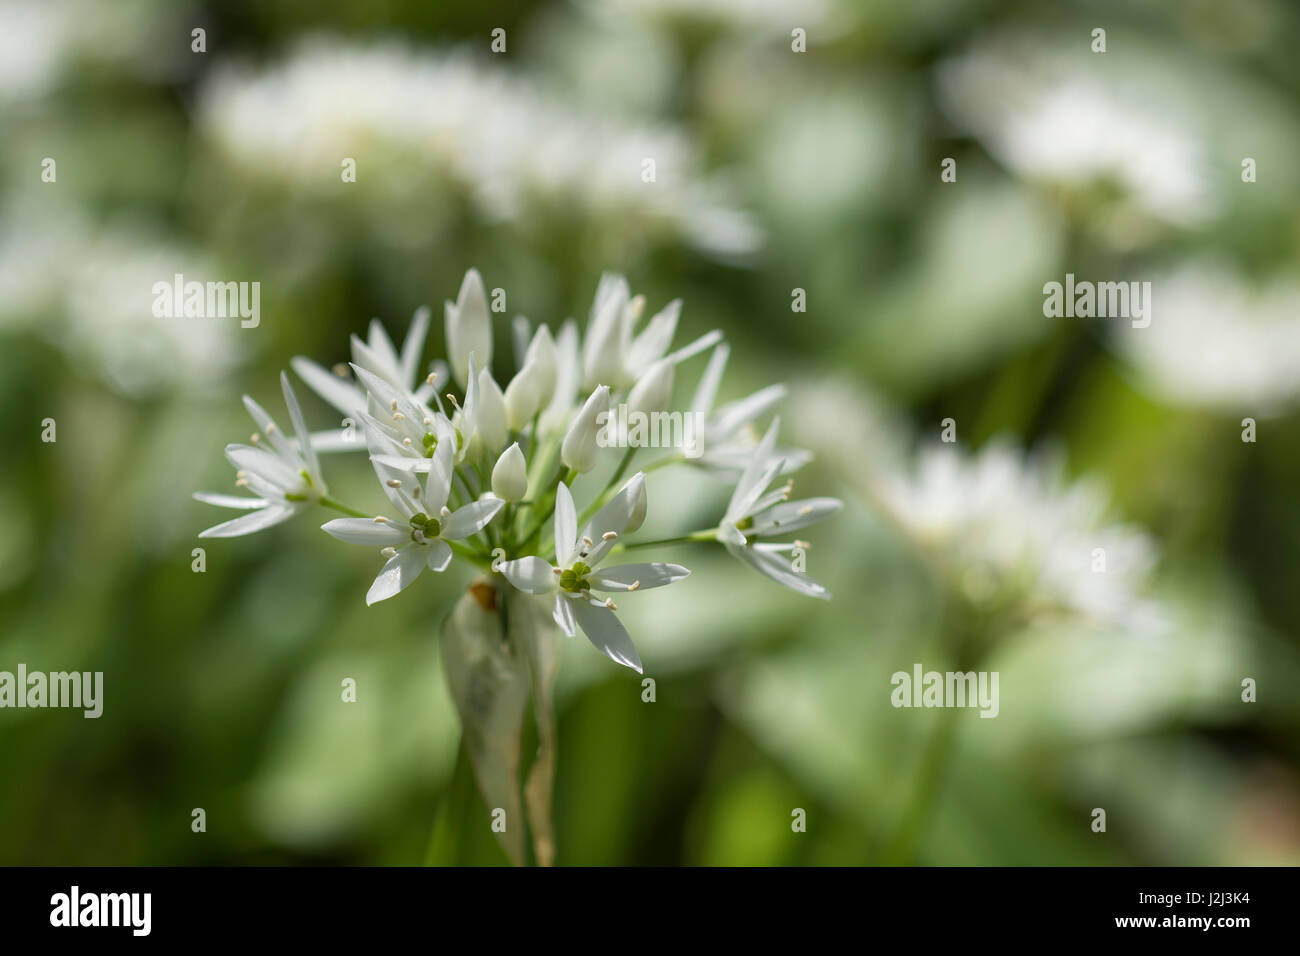 Gros plan de fleurs de l'ail sauvage appelée Ramsons / Allium ursinum. Un subst. de l'ail en cuisine et métaphore de la quête d'aliments sauvages au printemps Banque D'Images